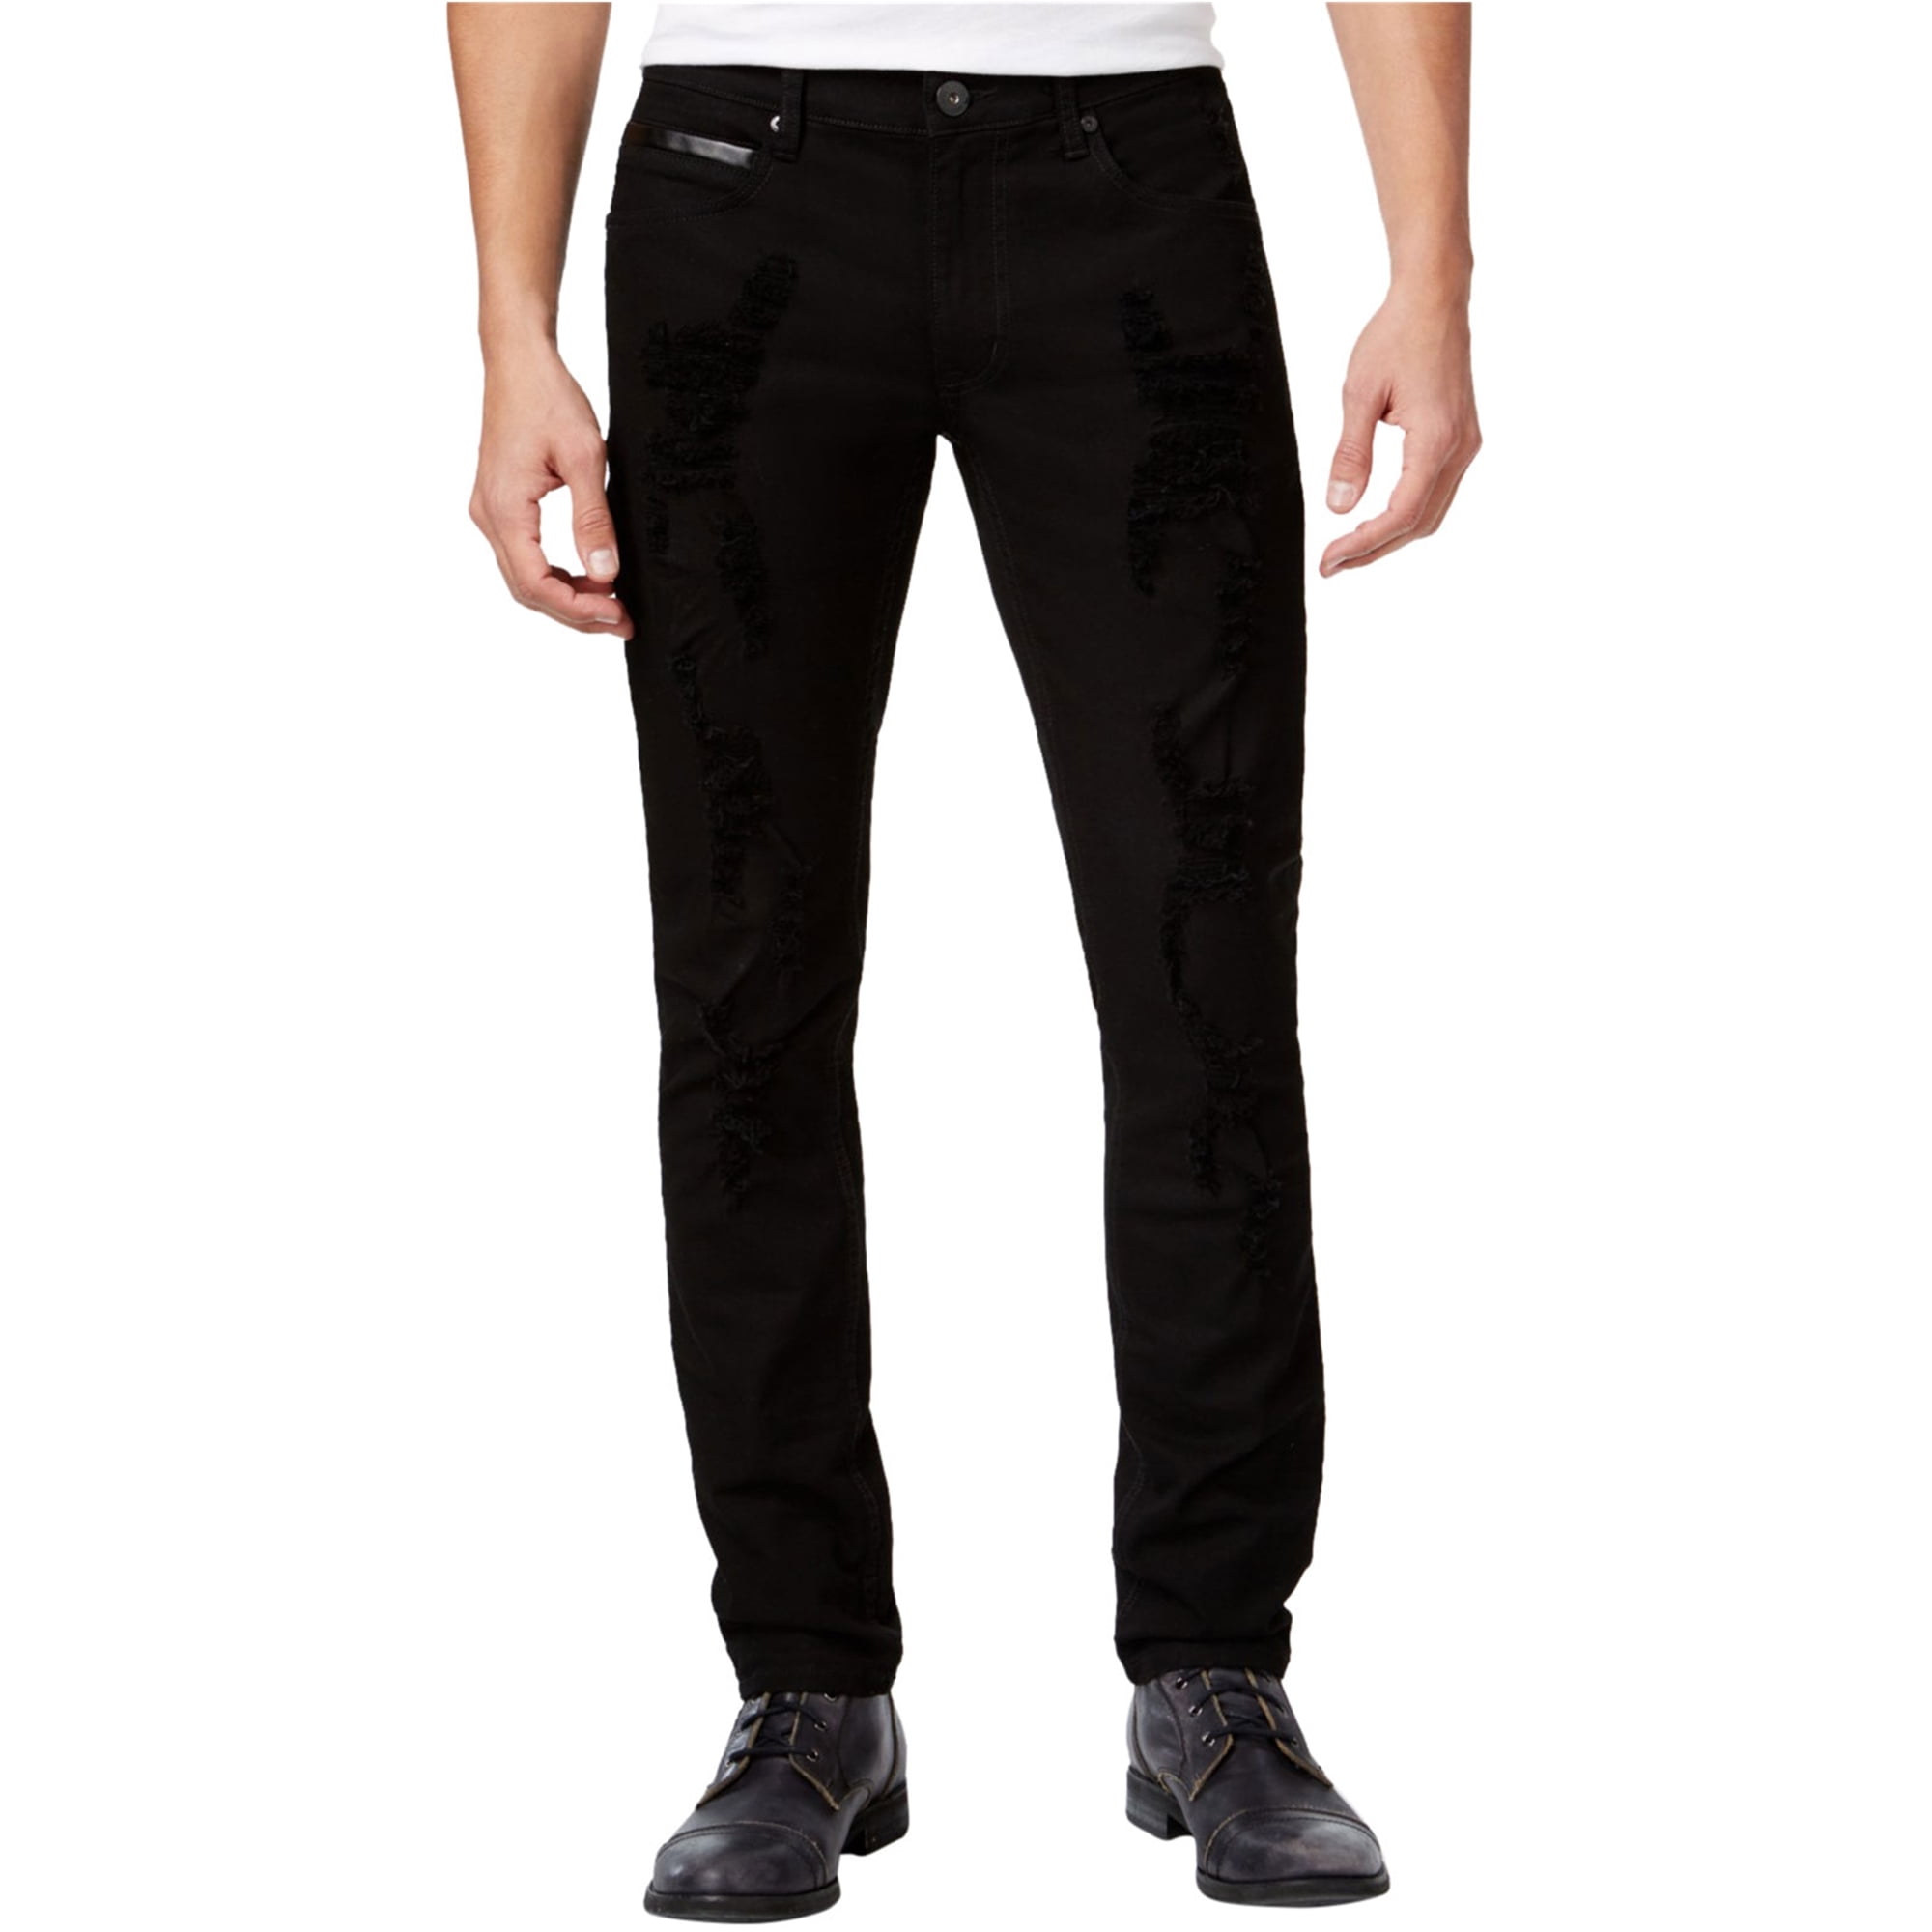 I-N-C Mens Faux Leather Trim Skinny Fit Jeans, Black, 32W x 30L -  Walmart.com